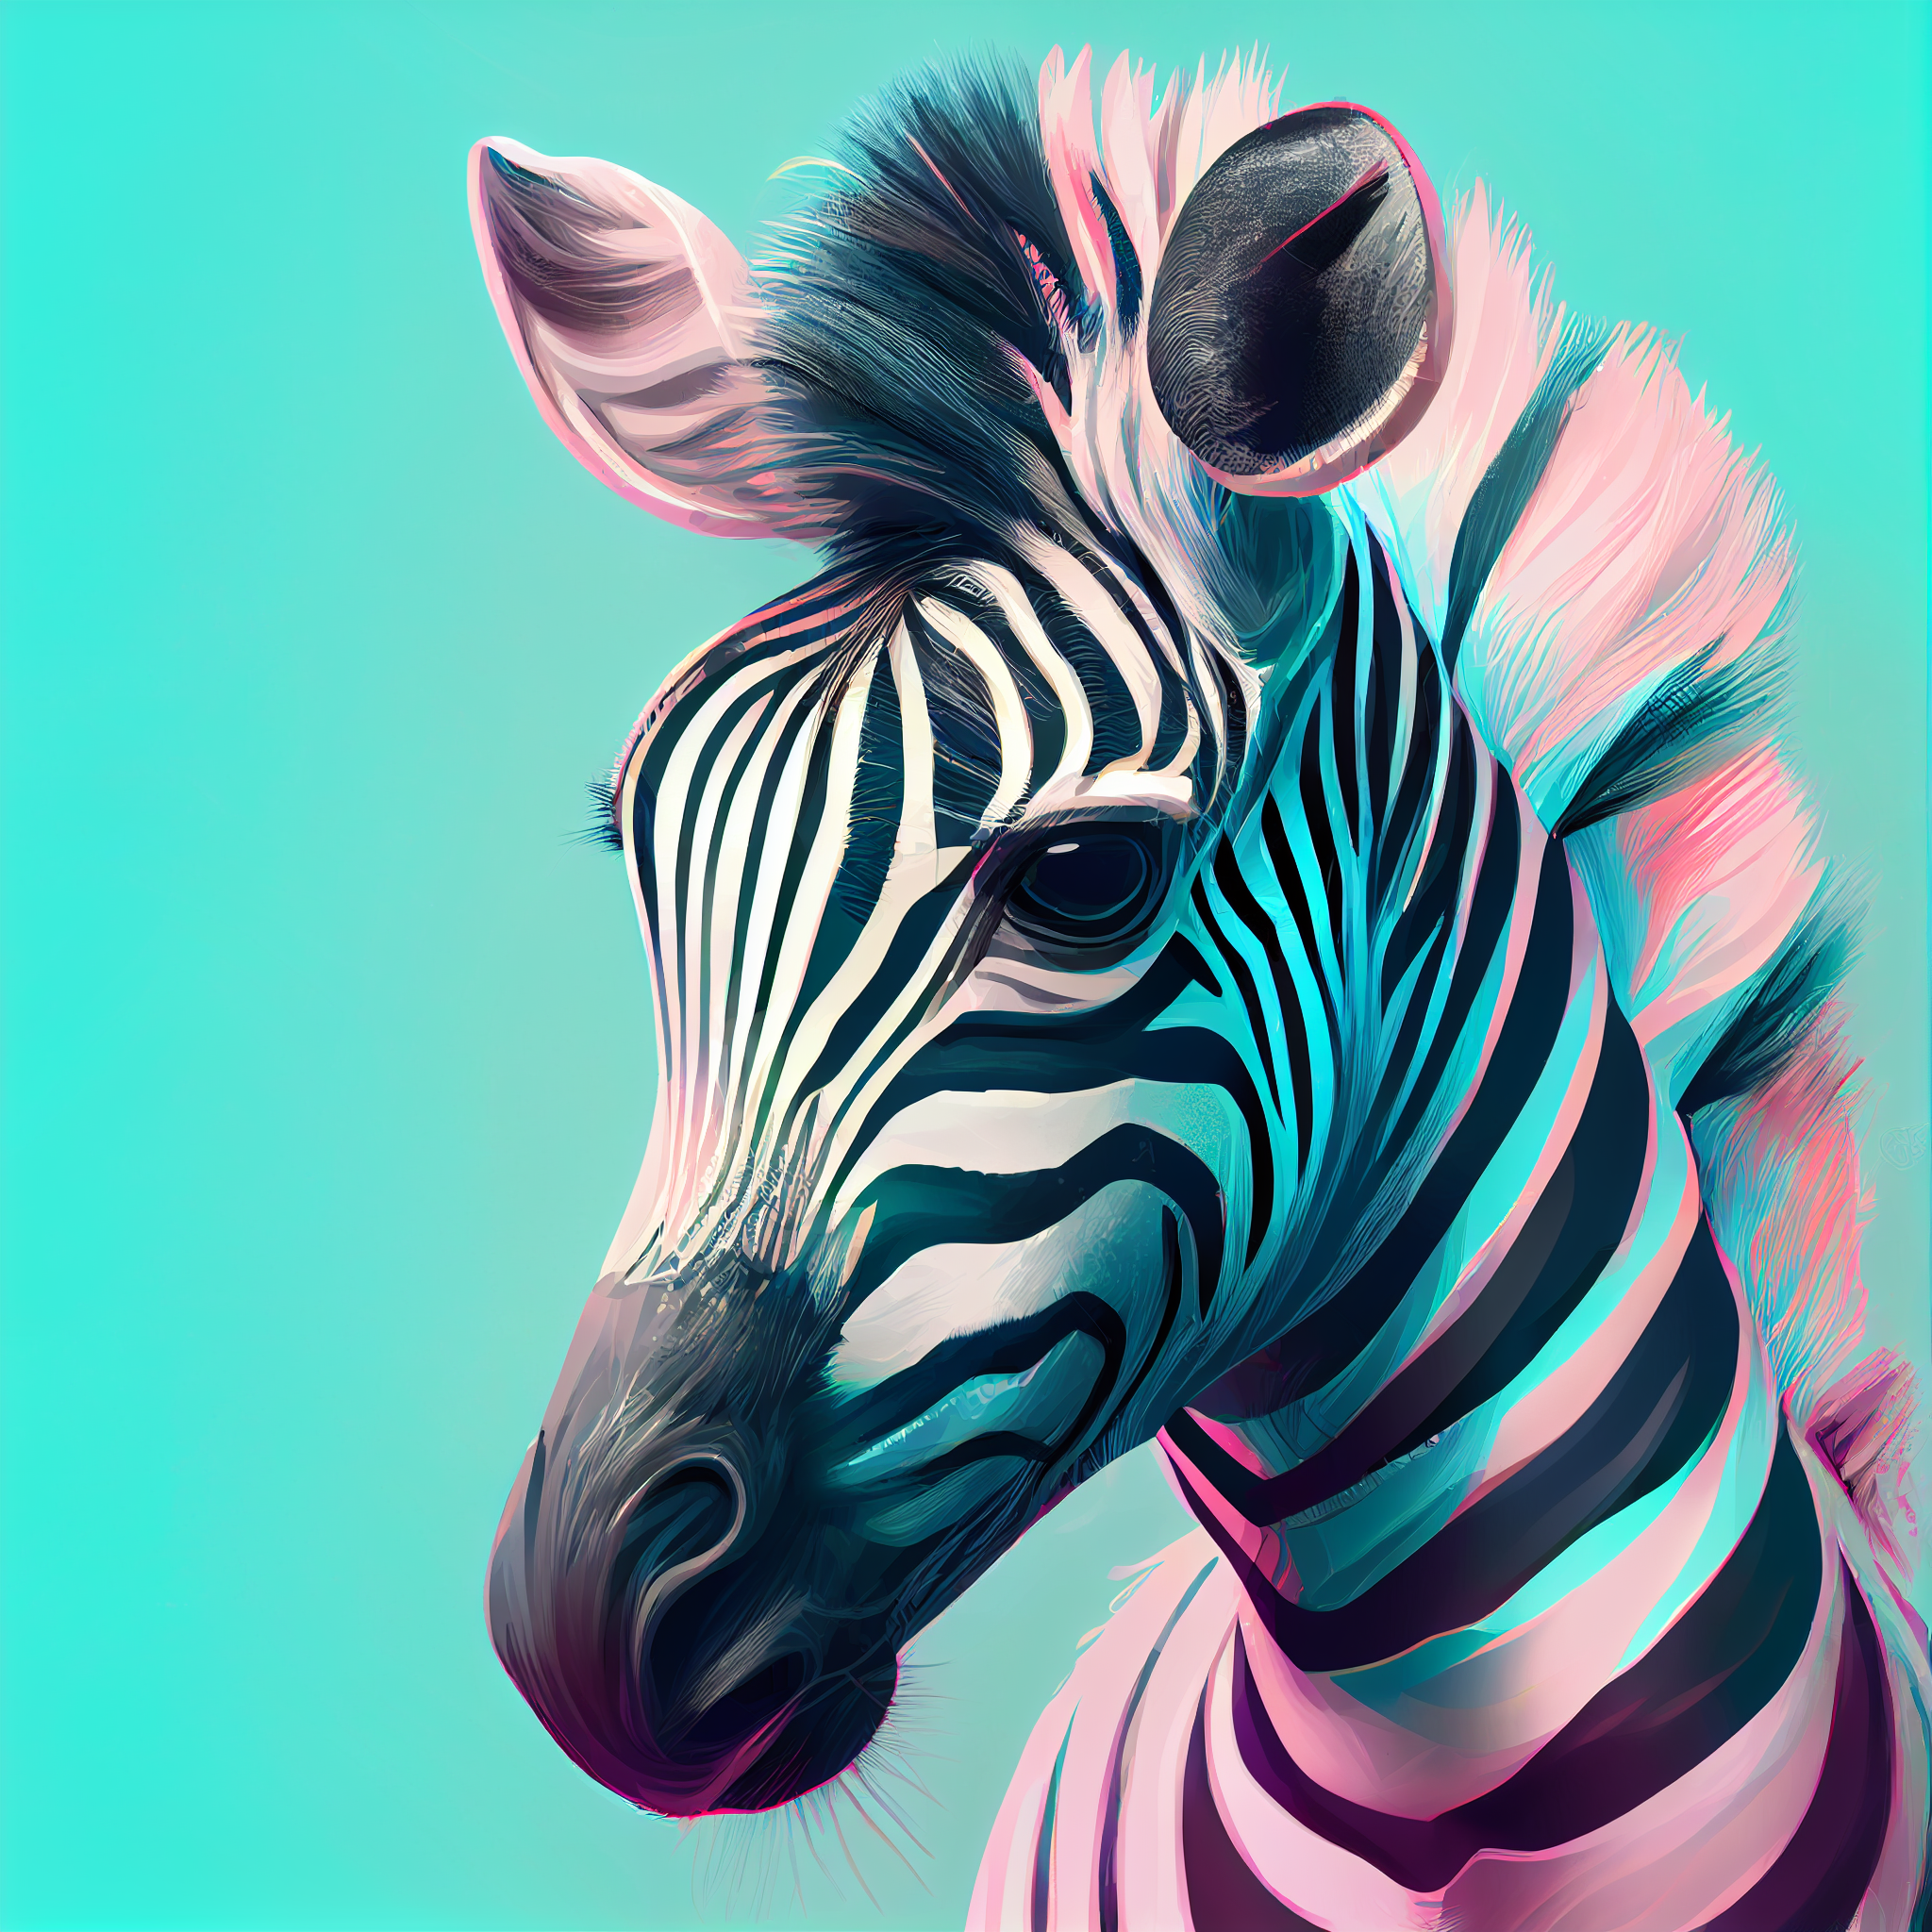 Zebra Delight: Adorable Anime-inspired Zebra Portrait in Pastel Colors